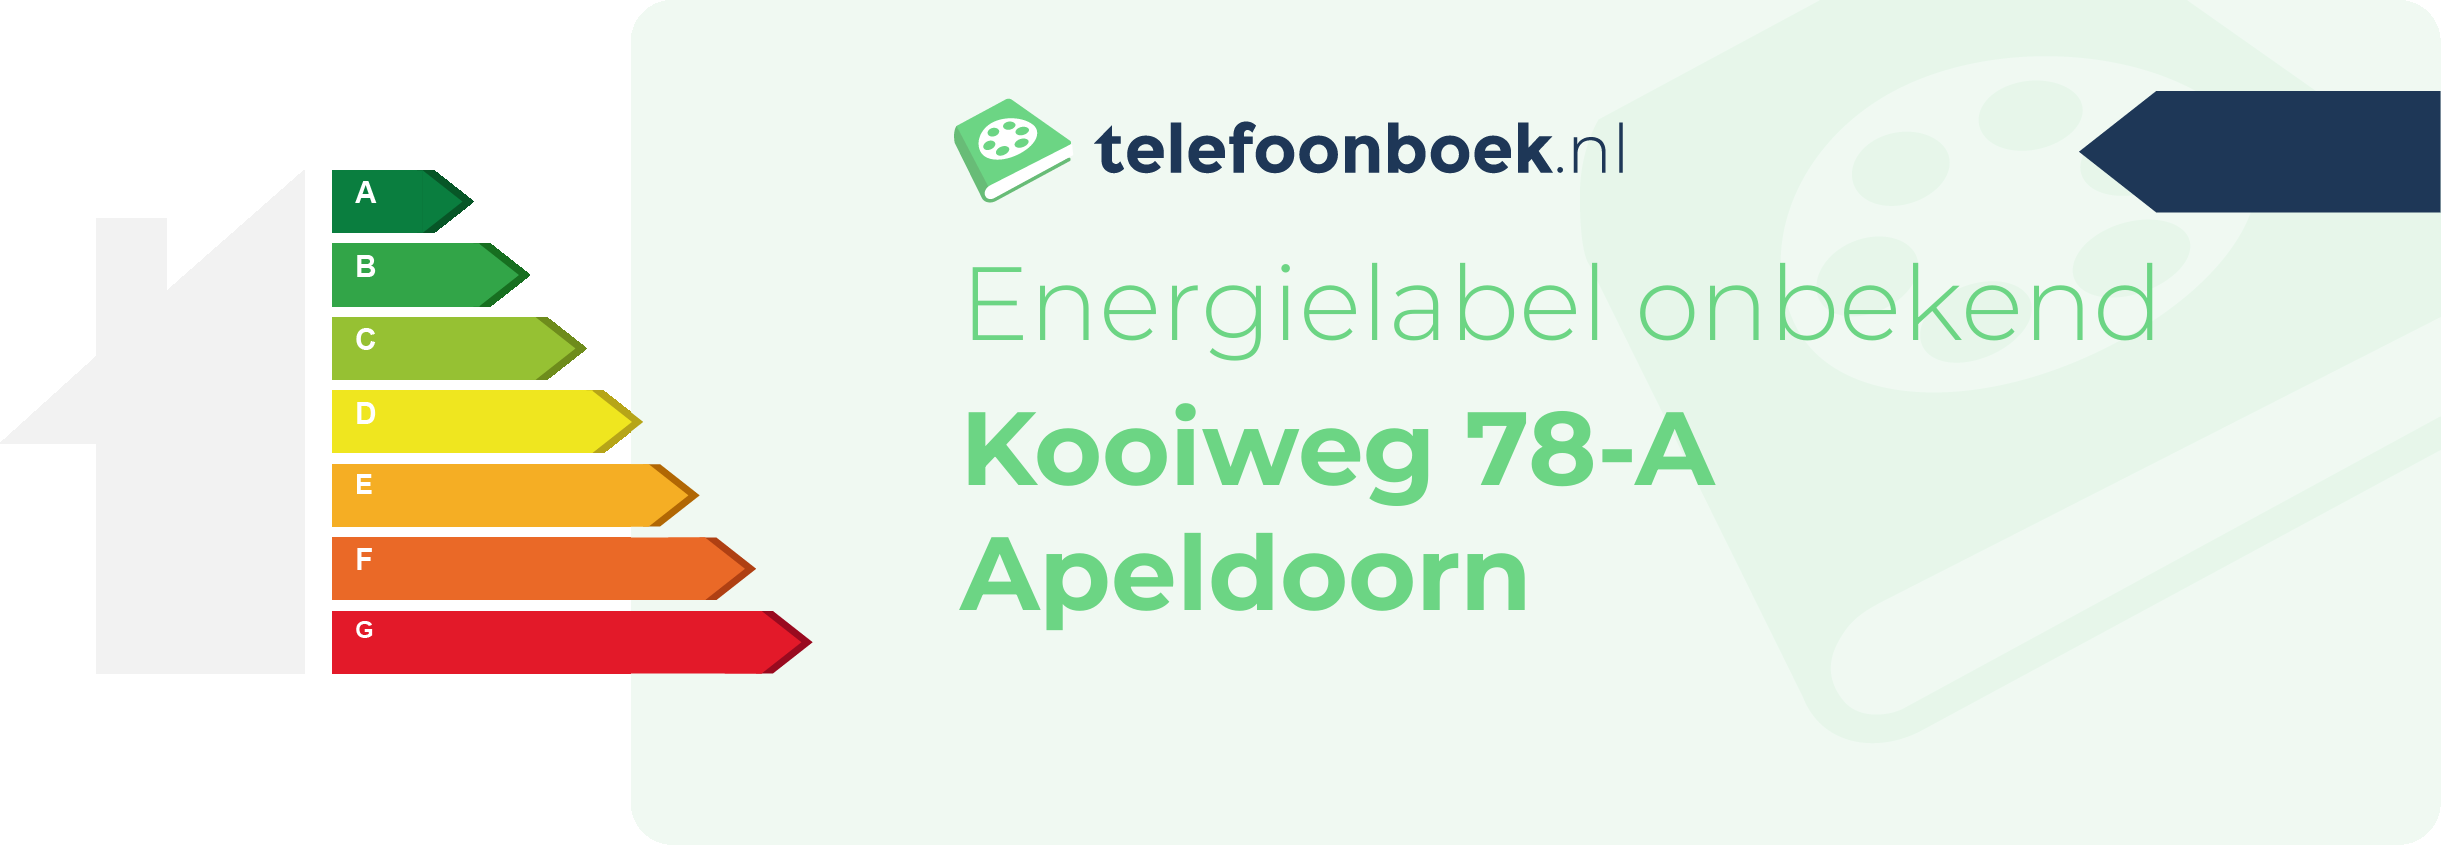 Energielabel Kooiweg 78-A Apeldoorn